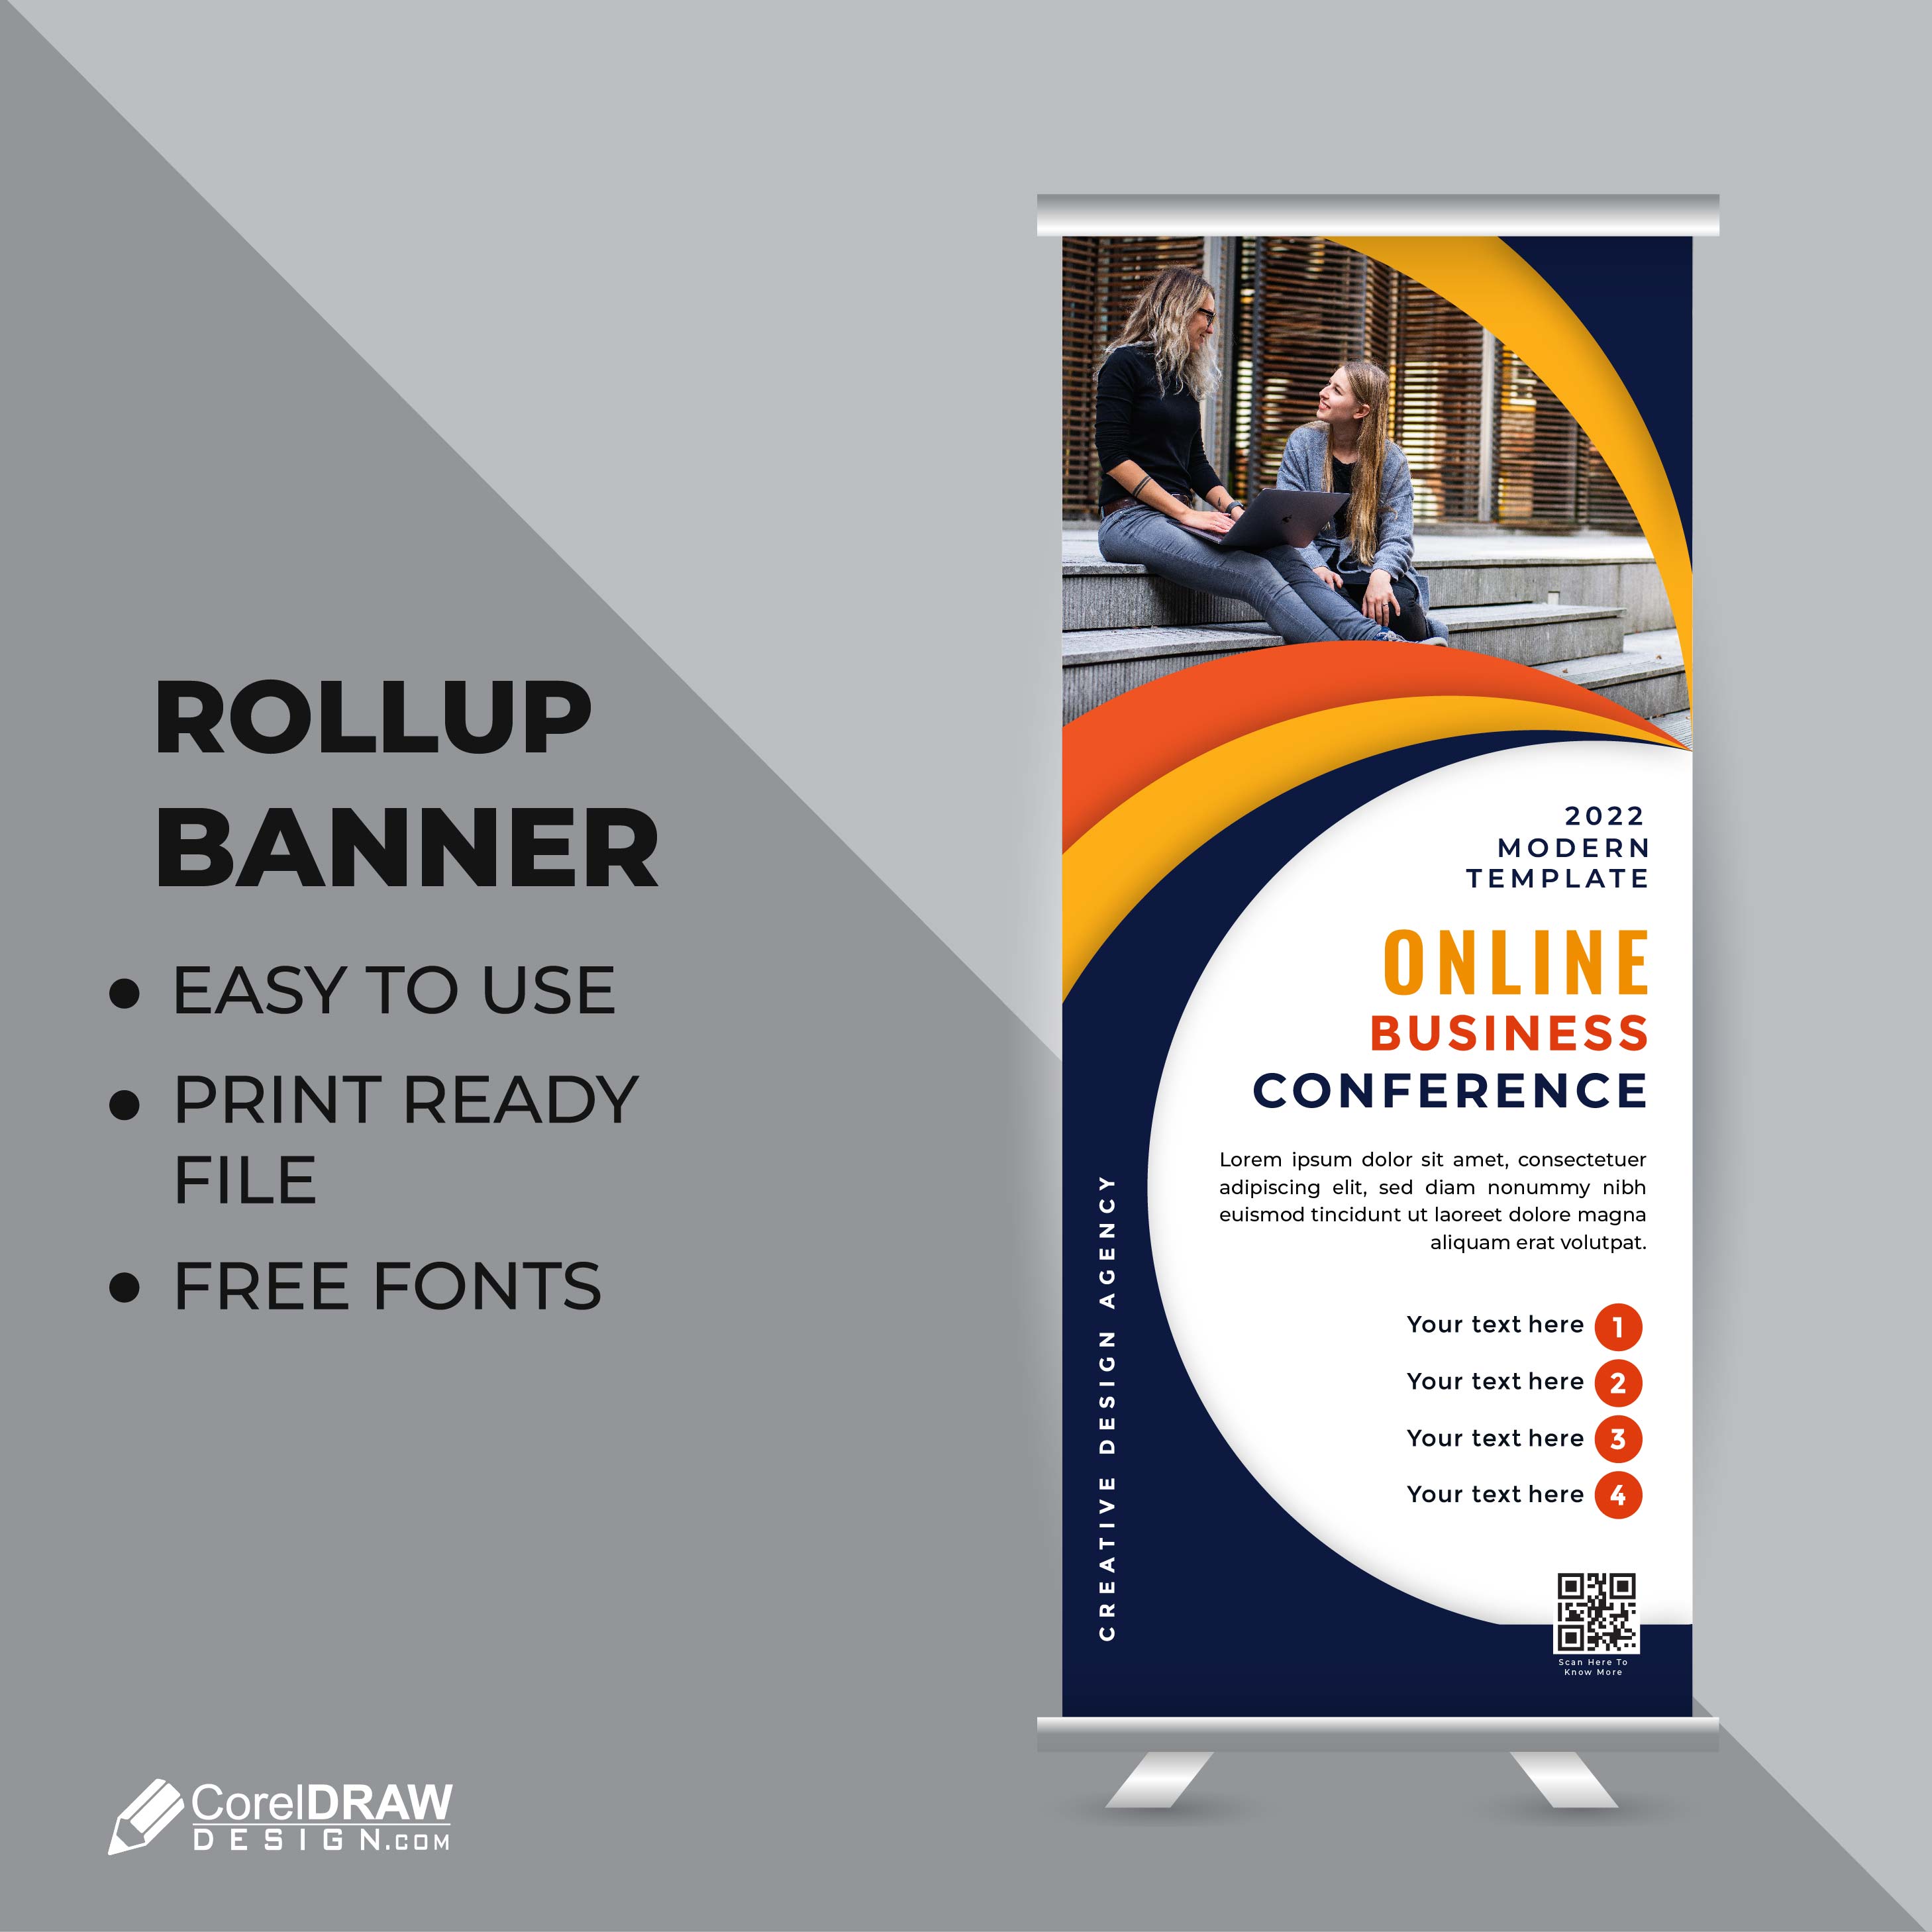 Bộ sưu tập mẫu roll up banner doanh nghiệp chuyên nghiệp và thu hút sẽ giúp bạn tạo ra những banner tuyệt đẹp và giới thiệu tốt hơn về sản phẩm và dịch vụ của bạn. Hãy thử sự sáng tạo của mình để tạo ra banner tốt nhất.